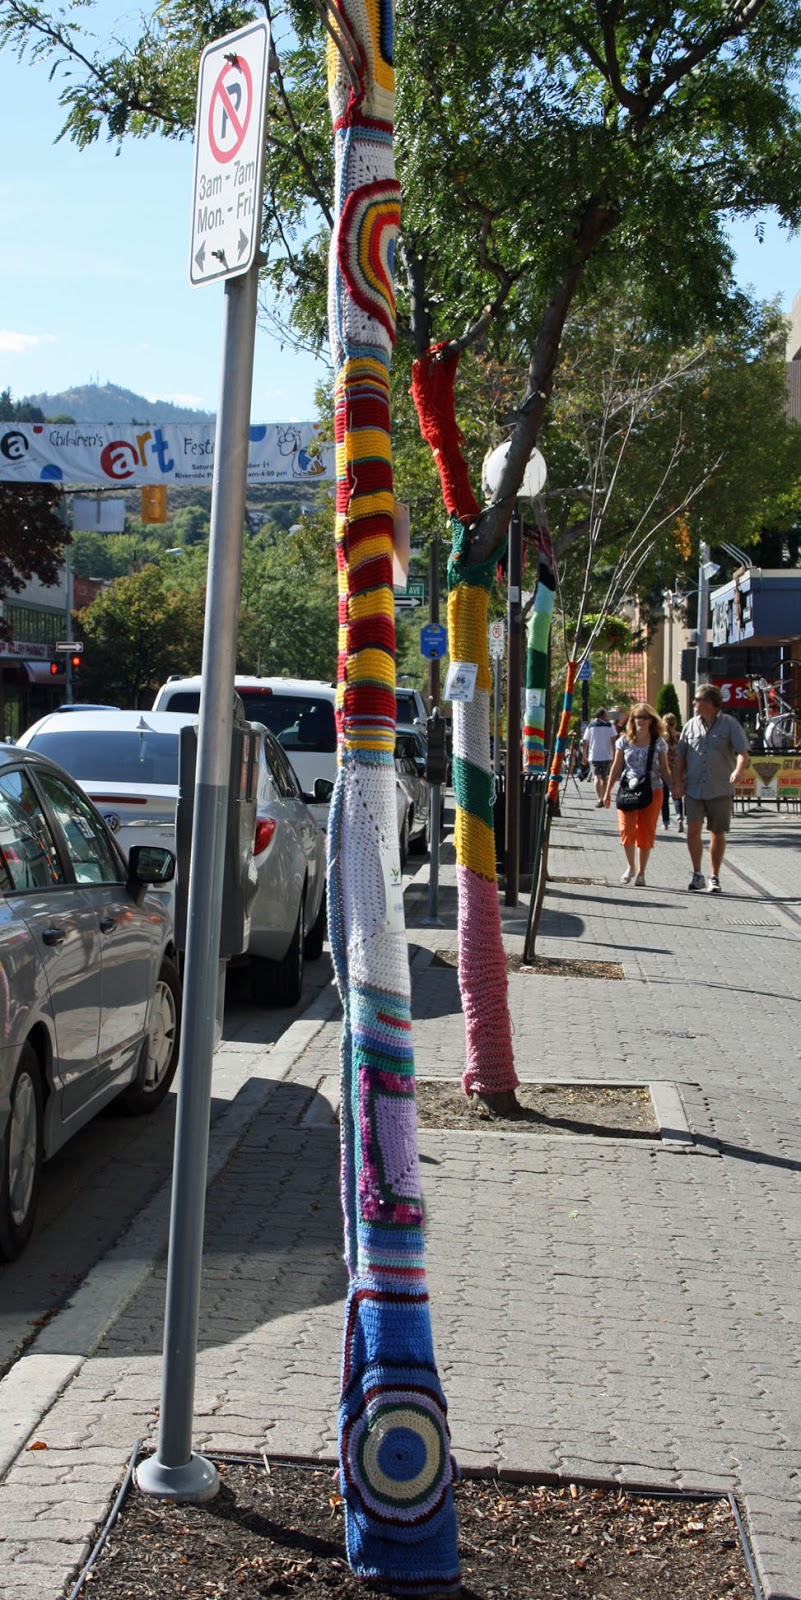 knotsewcute : yarn bombing in the 